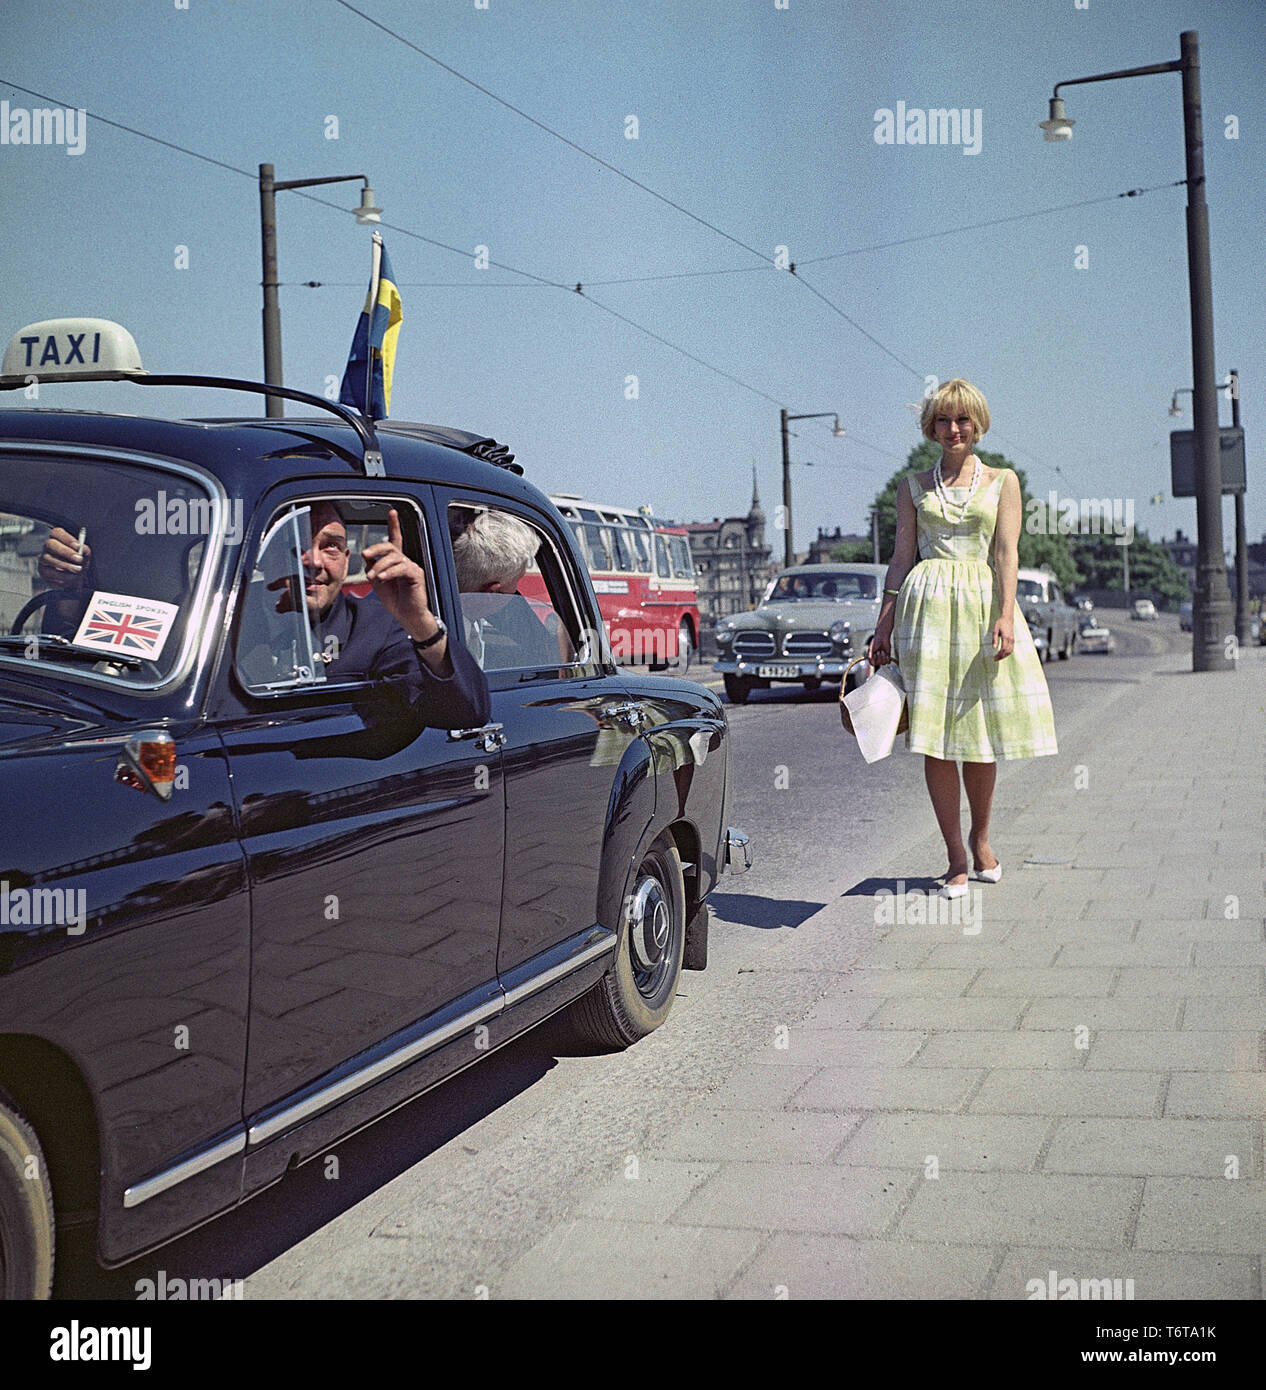 Taxifahrer in den 1960er Jahren. Ein Taxifahrer sieht so aus, als wenn er versucht, etwas Interessantes zu den Touristen auf dem Rücksitz. Er ist jedoch mehr im Blick auf die blonde junge Frau auf dem Bürgersteig interessieren. Schweden 1960 ref BV 71-5 Stockfoto